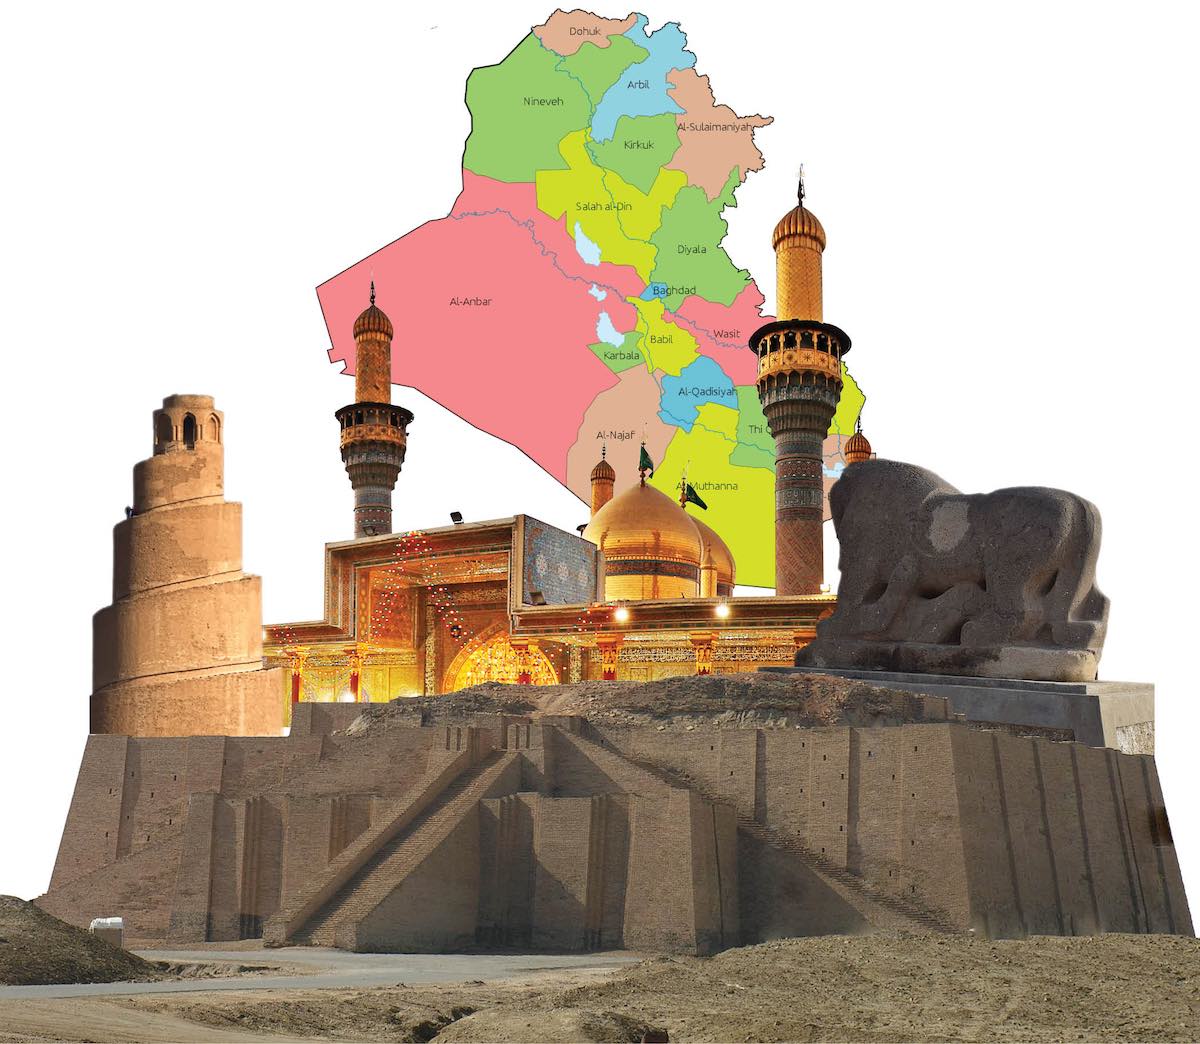 السياحة الدينية في العراق الواقع والمأمول  دراسة وصفية  البيان